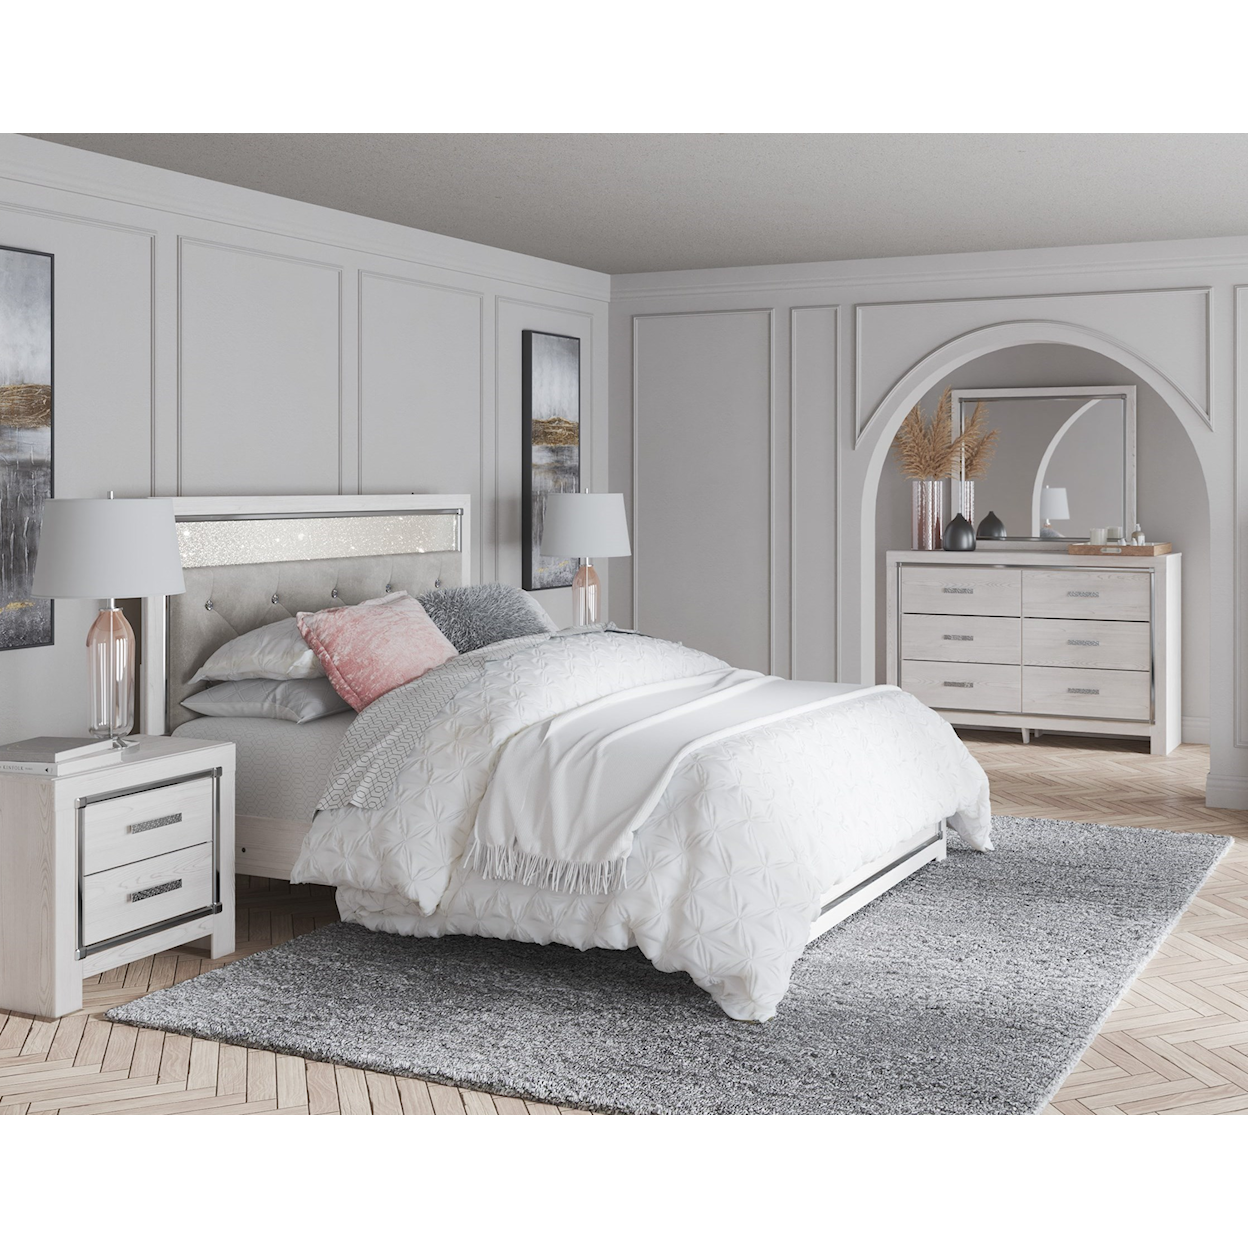 Benchcraft Altyra Queen Bedroom Set